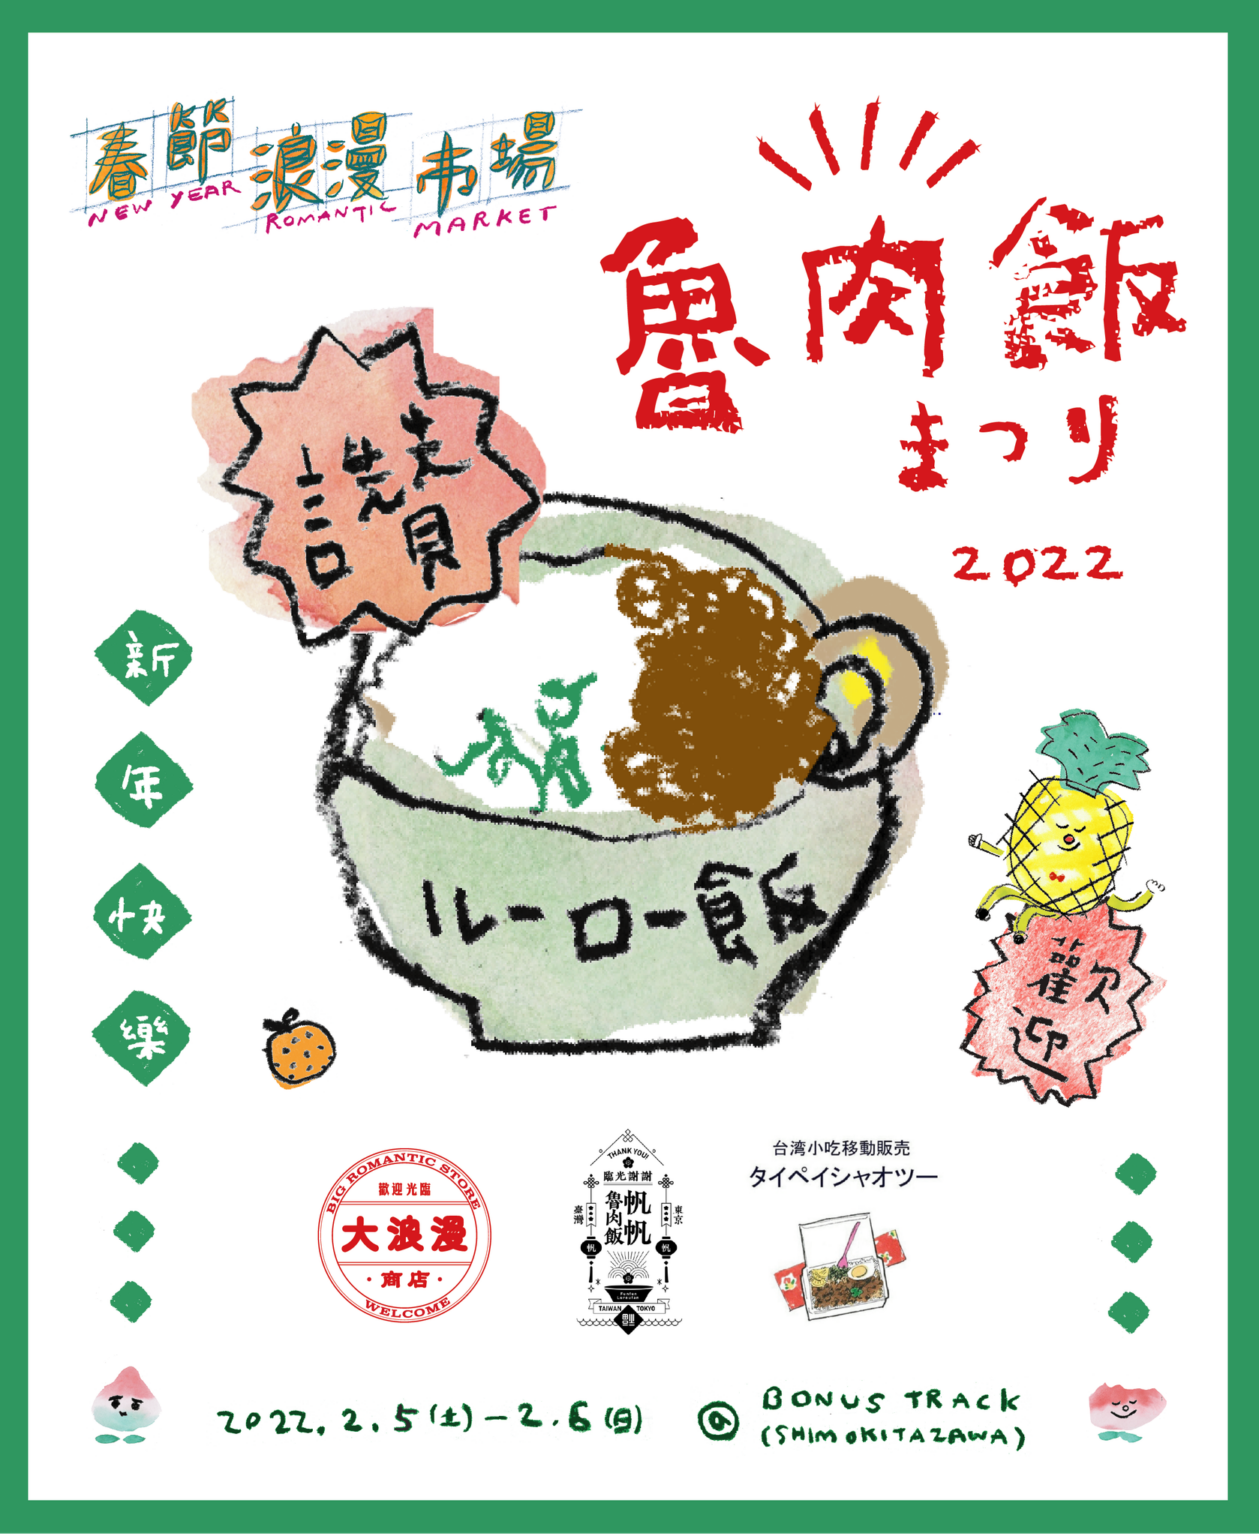 「春の魯肉飯祭り・新春魯肉飯祭」11:00〜16:00 ※売り切れ次第終了：2/5（土）、6（日）出店。